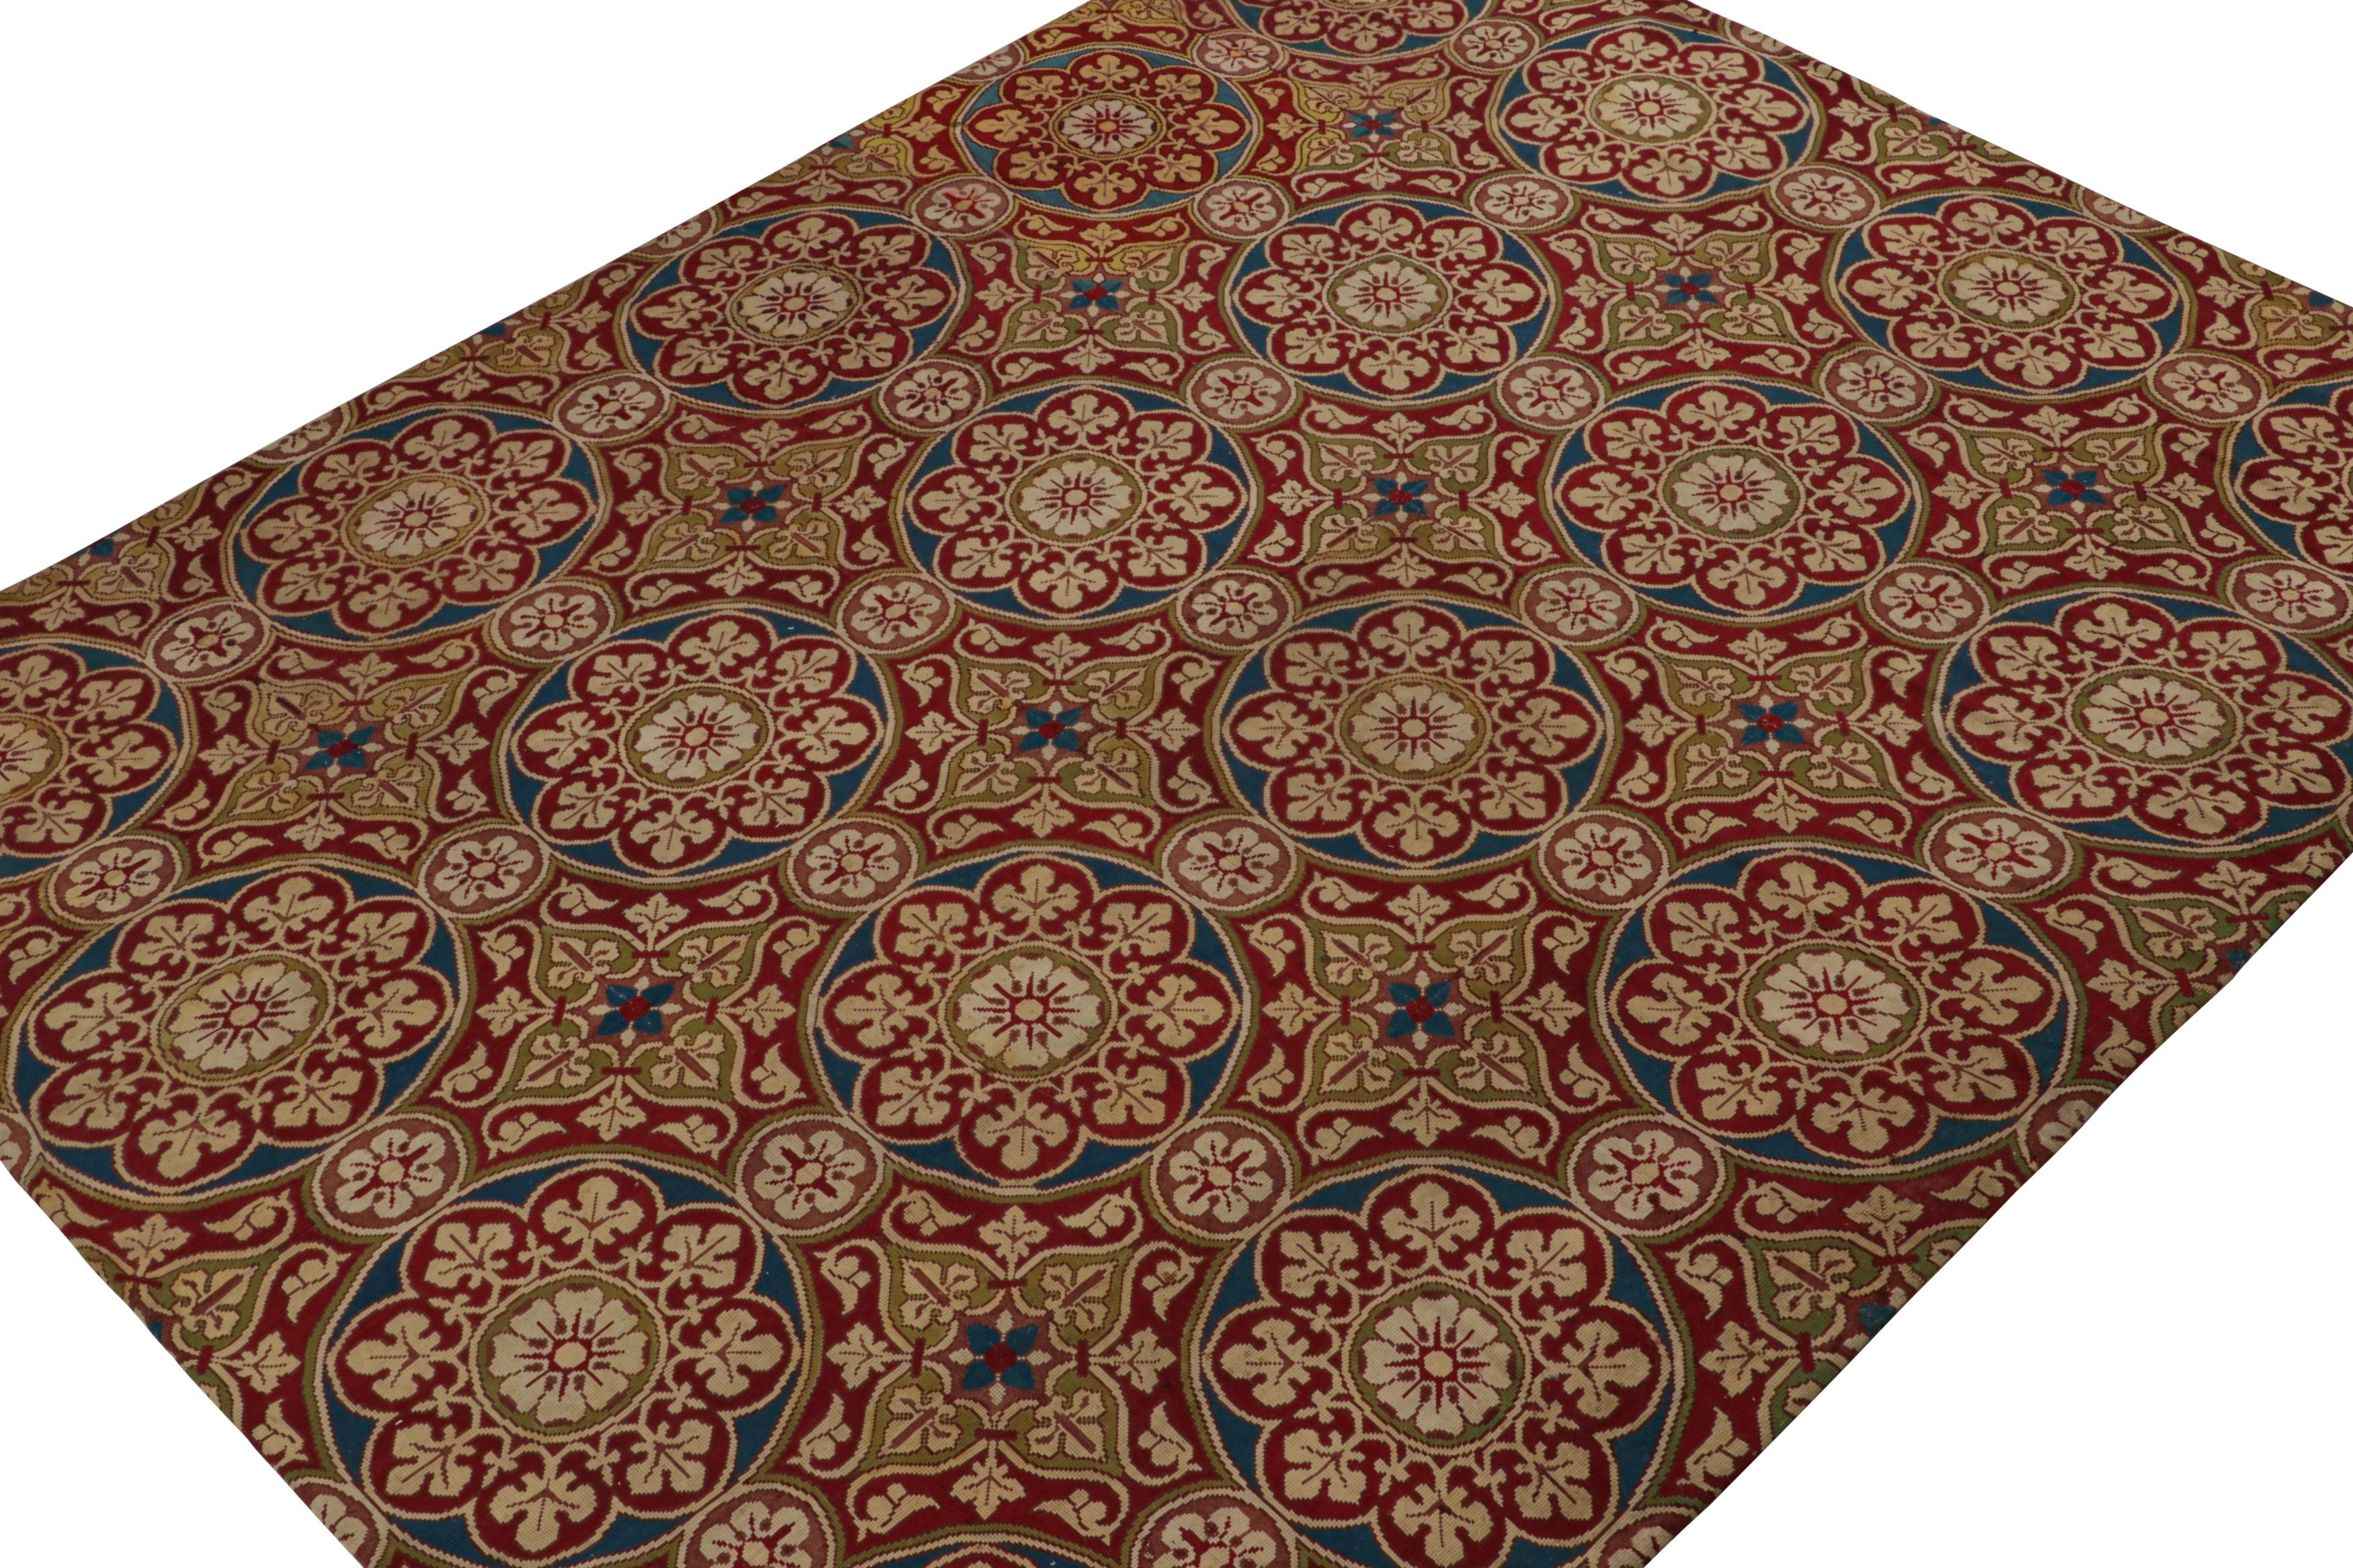 Tissé à la main en laine et originaire de France vers 1920-1930, ce tapis ancien à l'aiguille de 9x11 présente un champ rouge et des médaillons floraux en bleu marine, vert chartreuse et notes beiges.

Sur le design : 

Les points d'aiguille